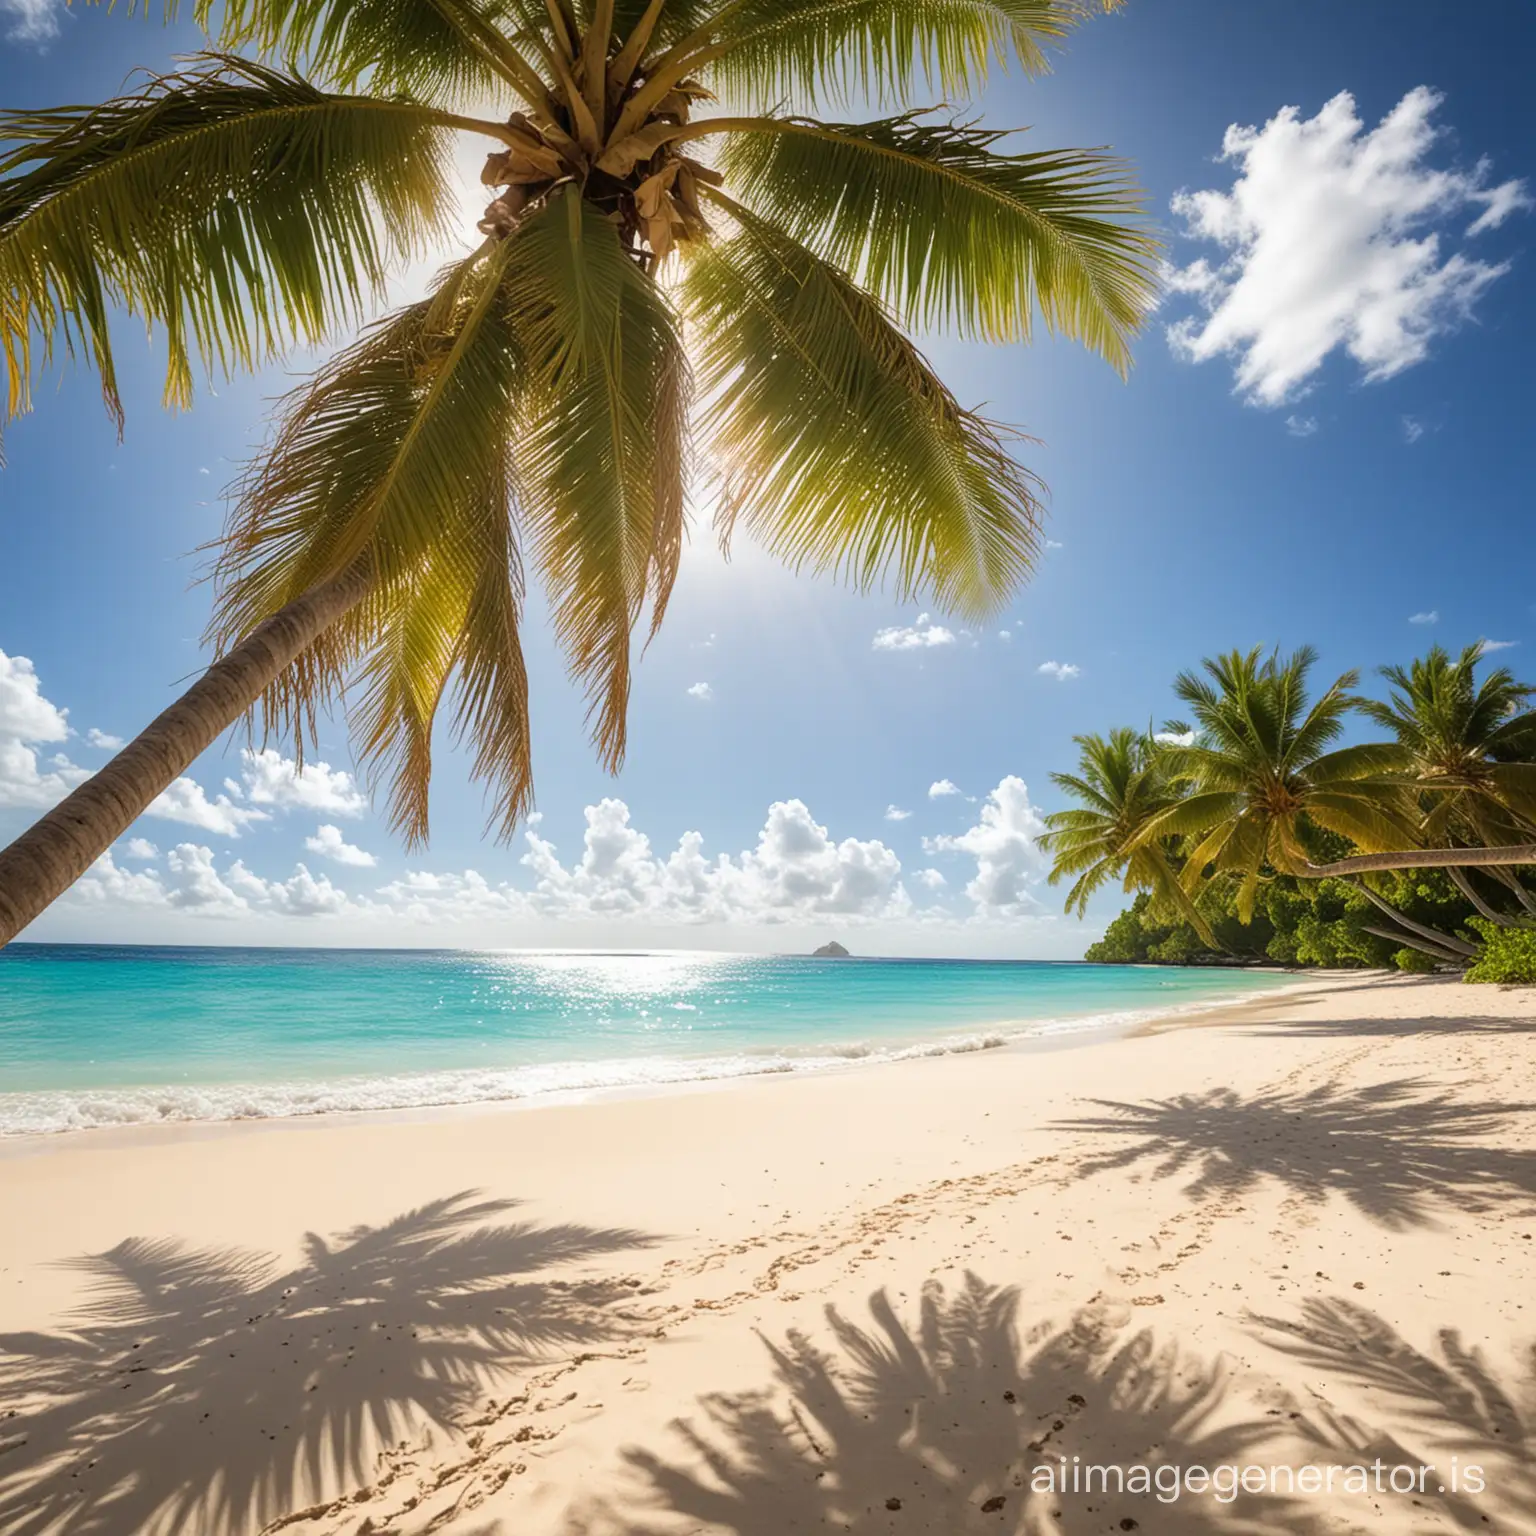 Sunny-Caribbean-Beach-with-Palm-Trees